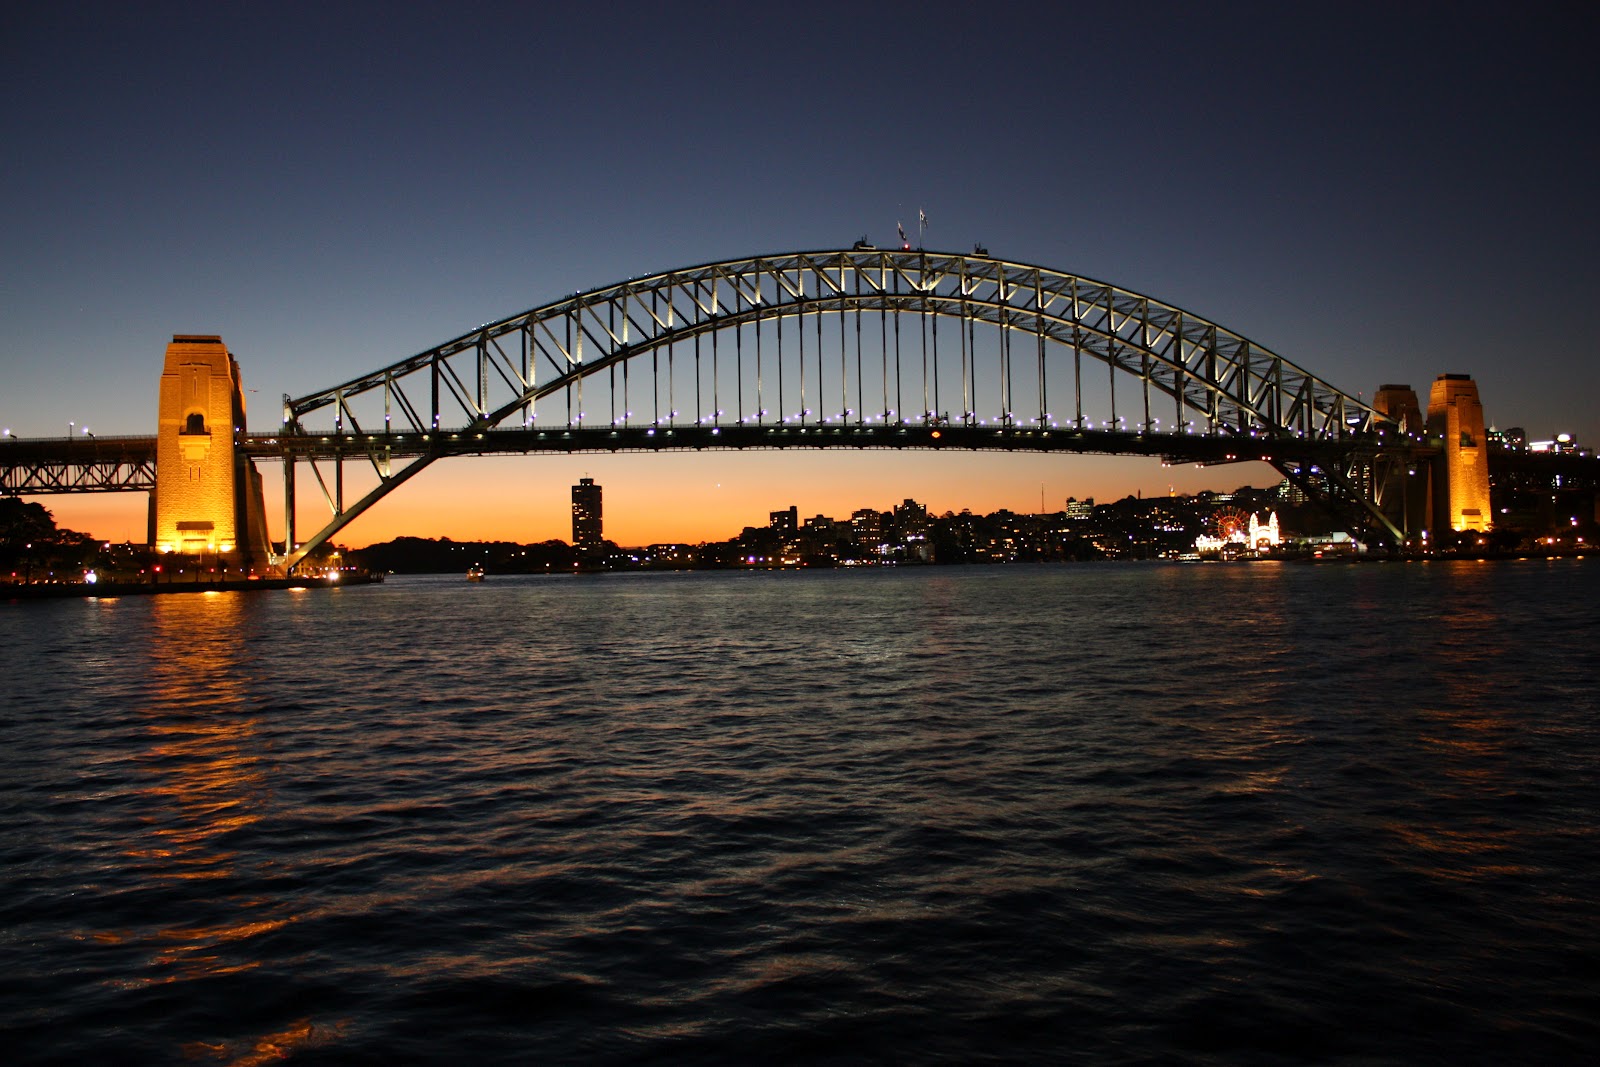 Harbour bridge. Харбор-бридж Сидней. Мост Харбор бридж. Мост Харбор бридж в Австралии. Мост Харбор-бридж в Сиднее – это стальной арочный мост.